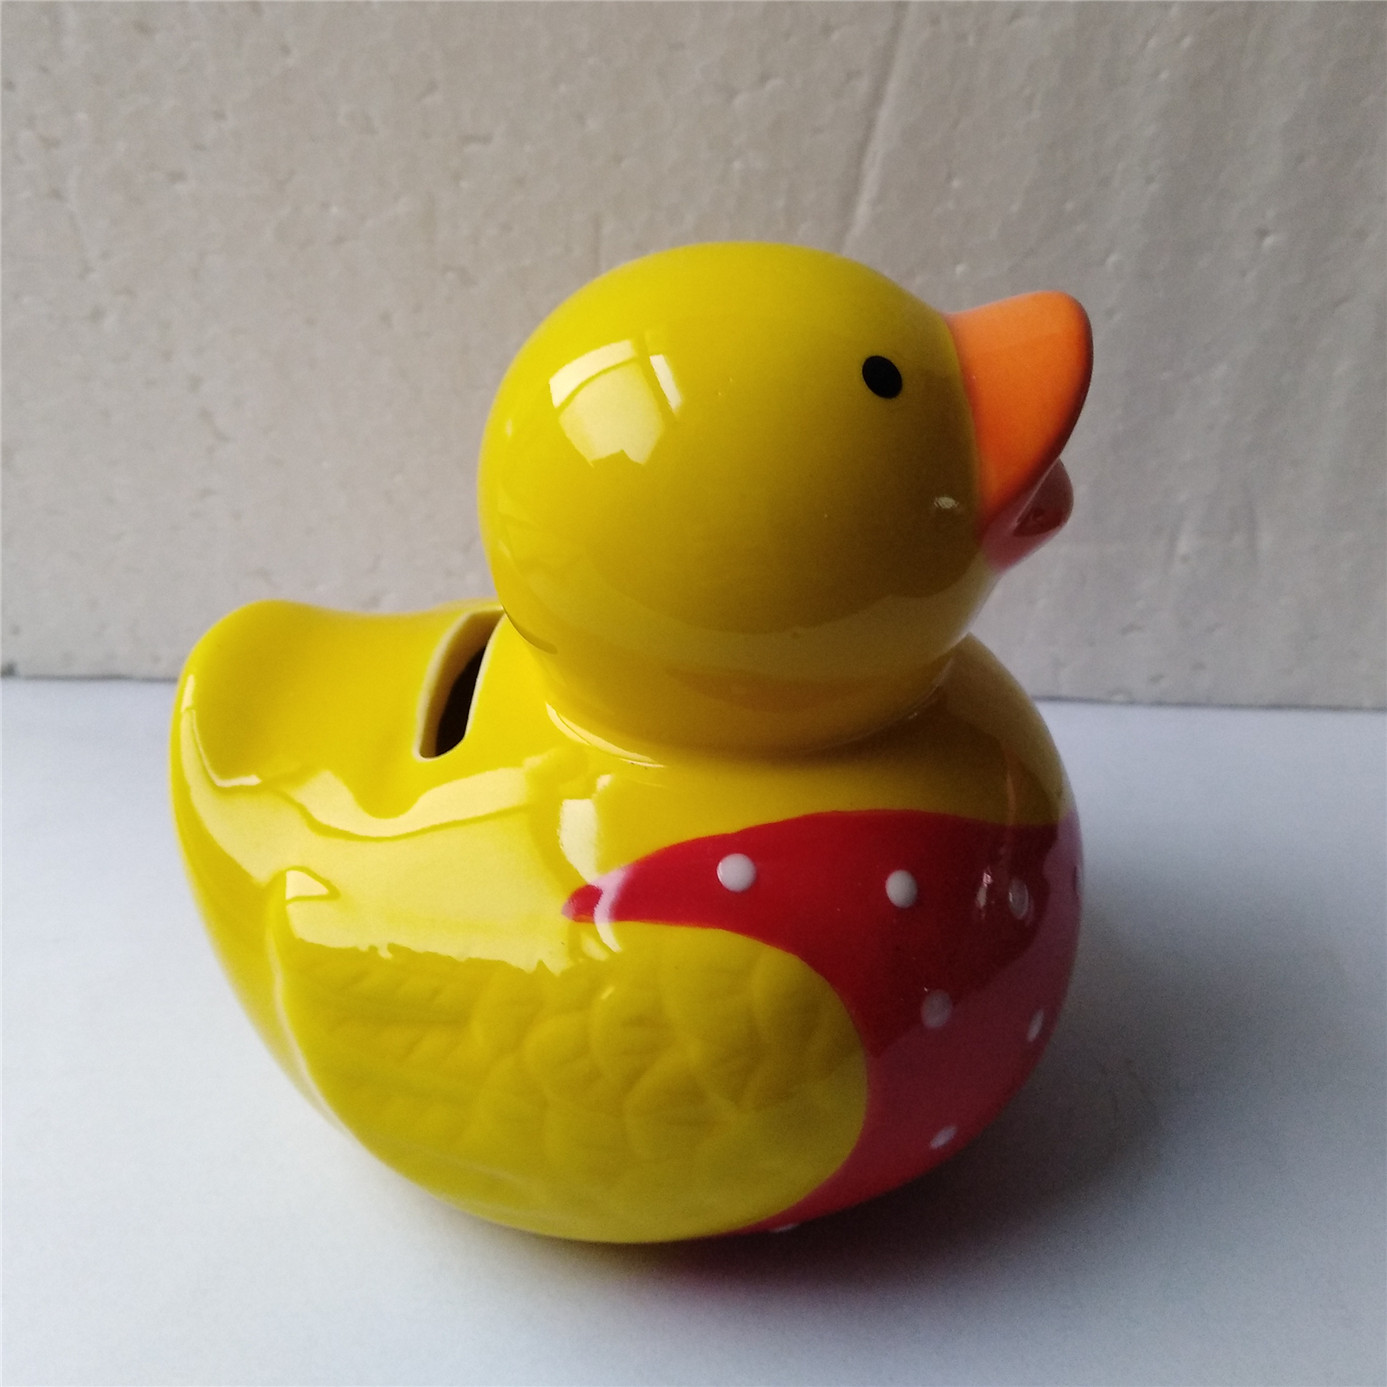 Manufacture  custom cute  duck piggy bank  ceramic yellow duck  piggy bank  3d money bank